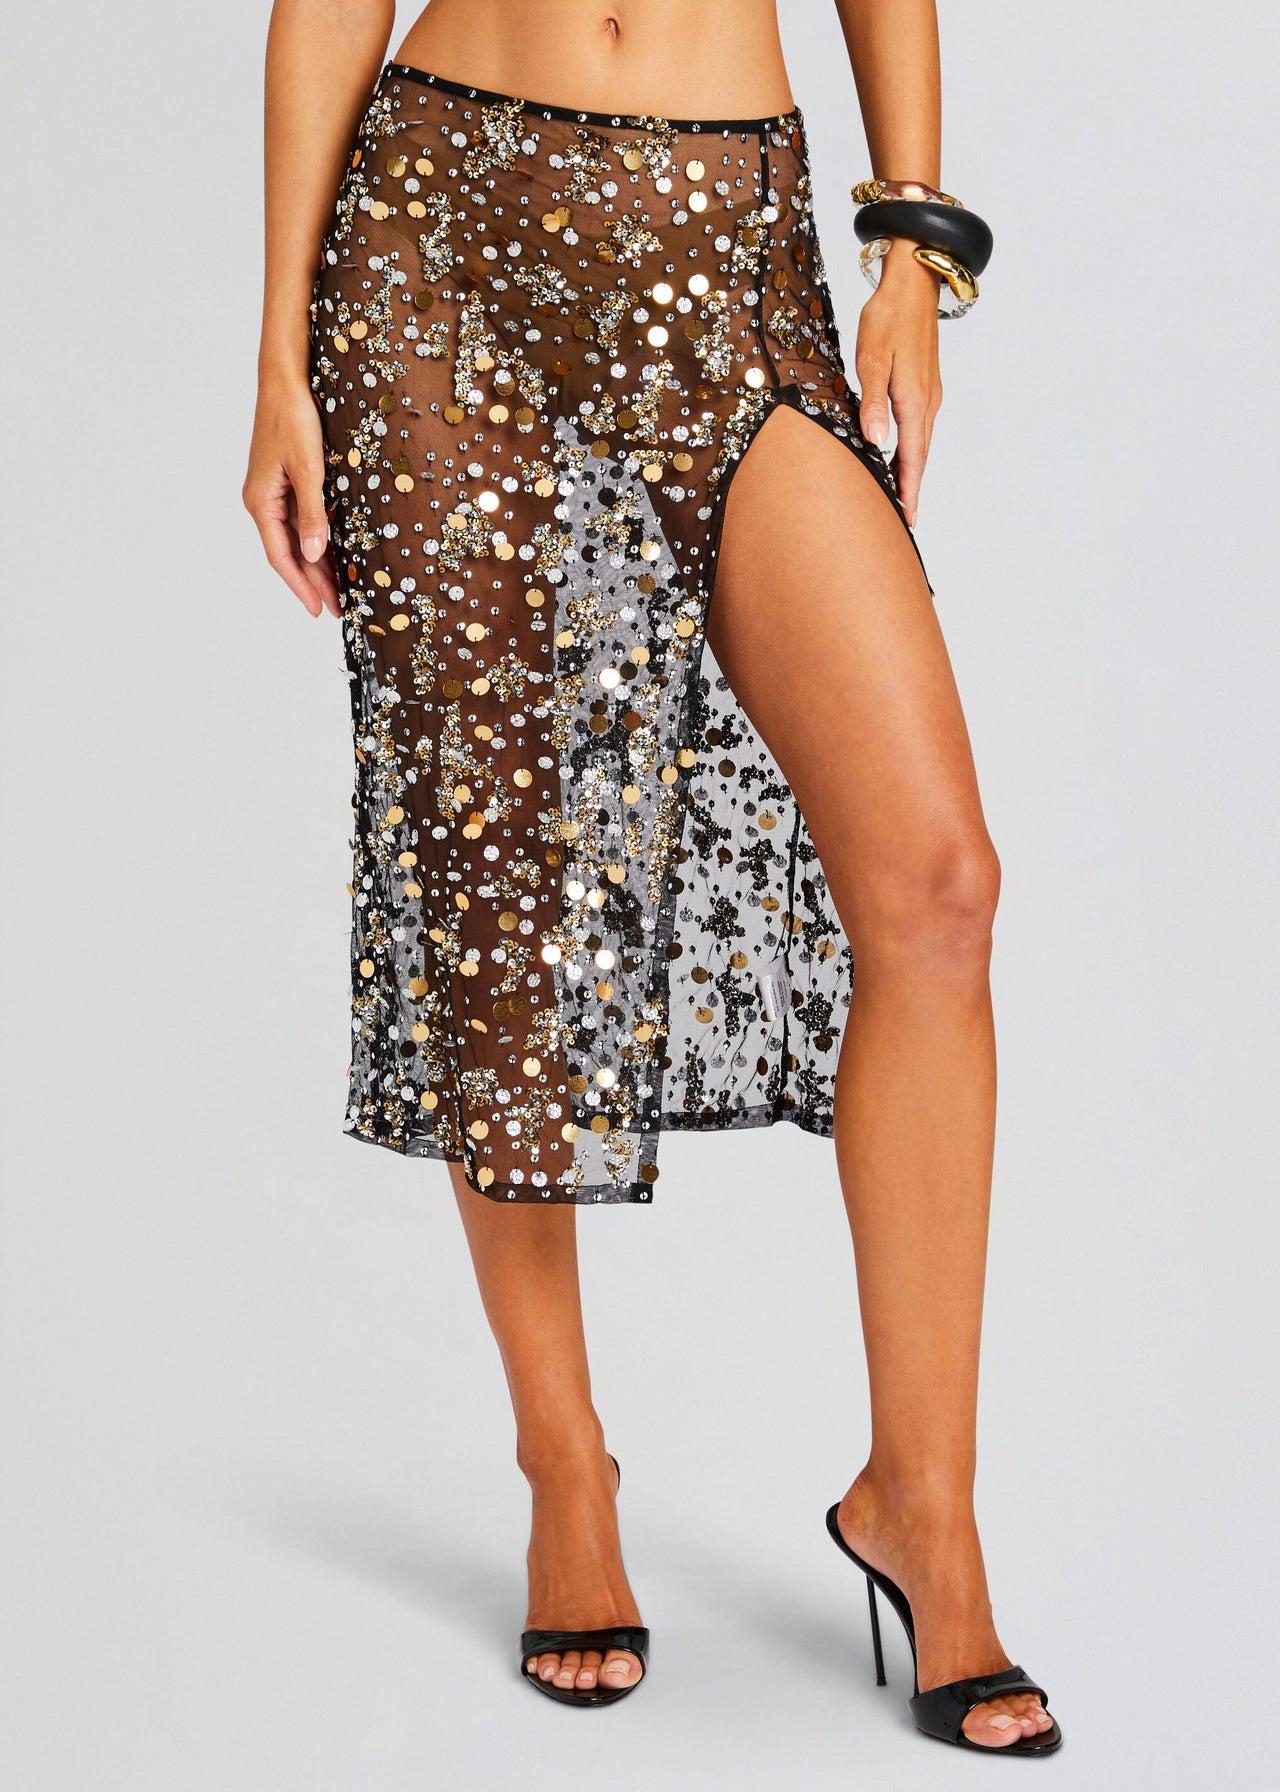 Mirage Embellished Skirt